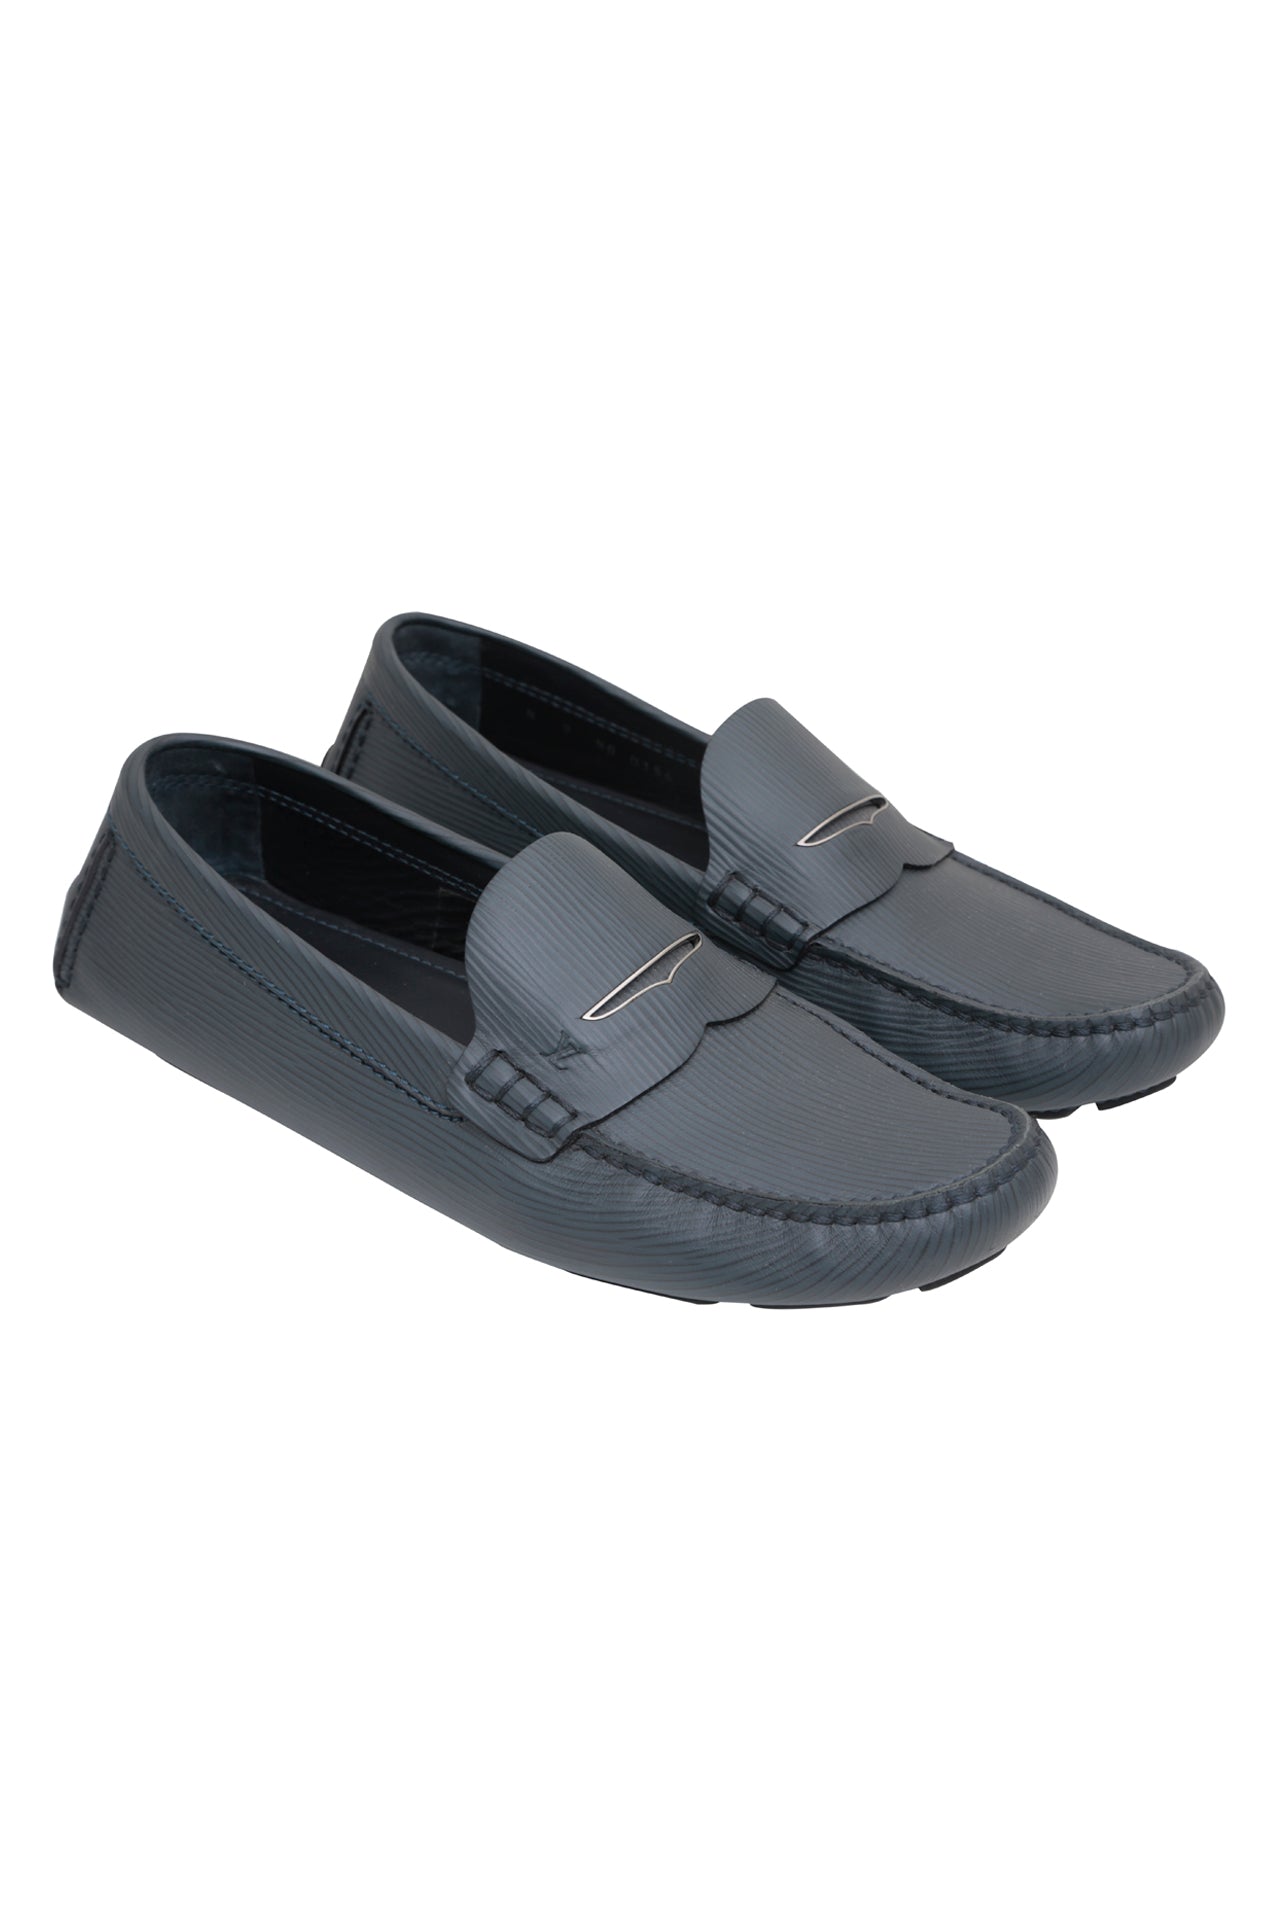 Louis Vuitton Men's Blue Epi Leather Moccasin Car Shoes Loafers 8